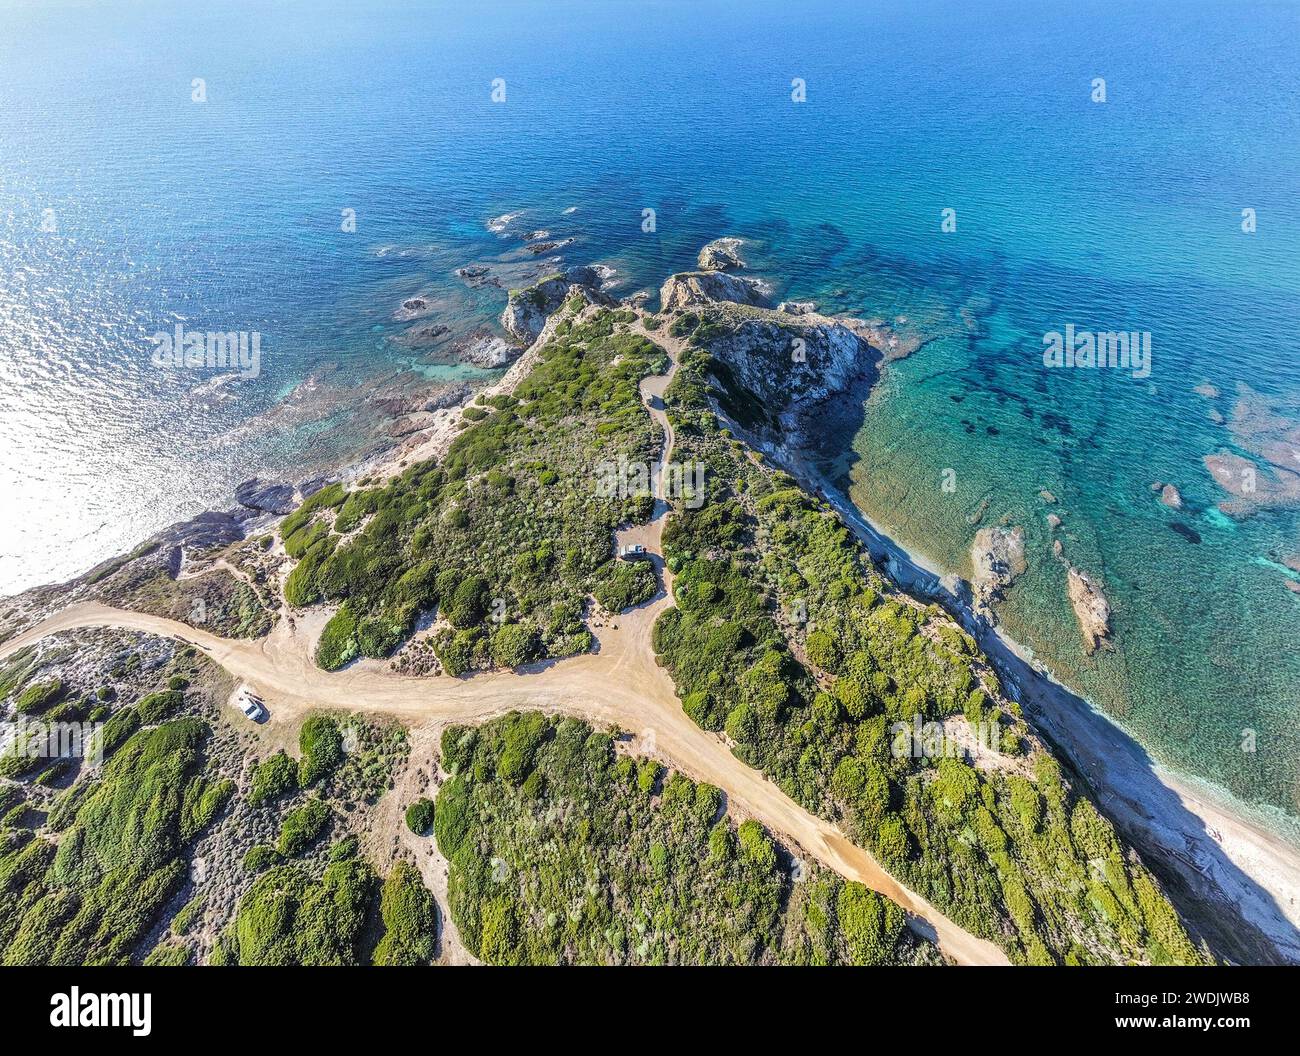 Vue aérienne du chemin de terre de Sentiero della Nurra en Sardaigne, Italie Banque D'Images